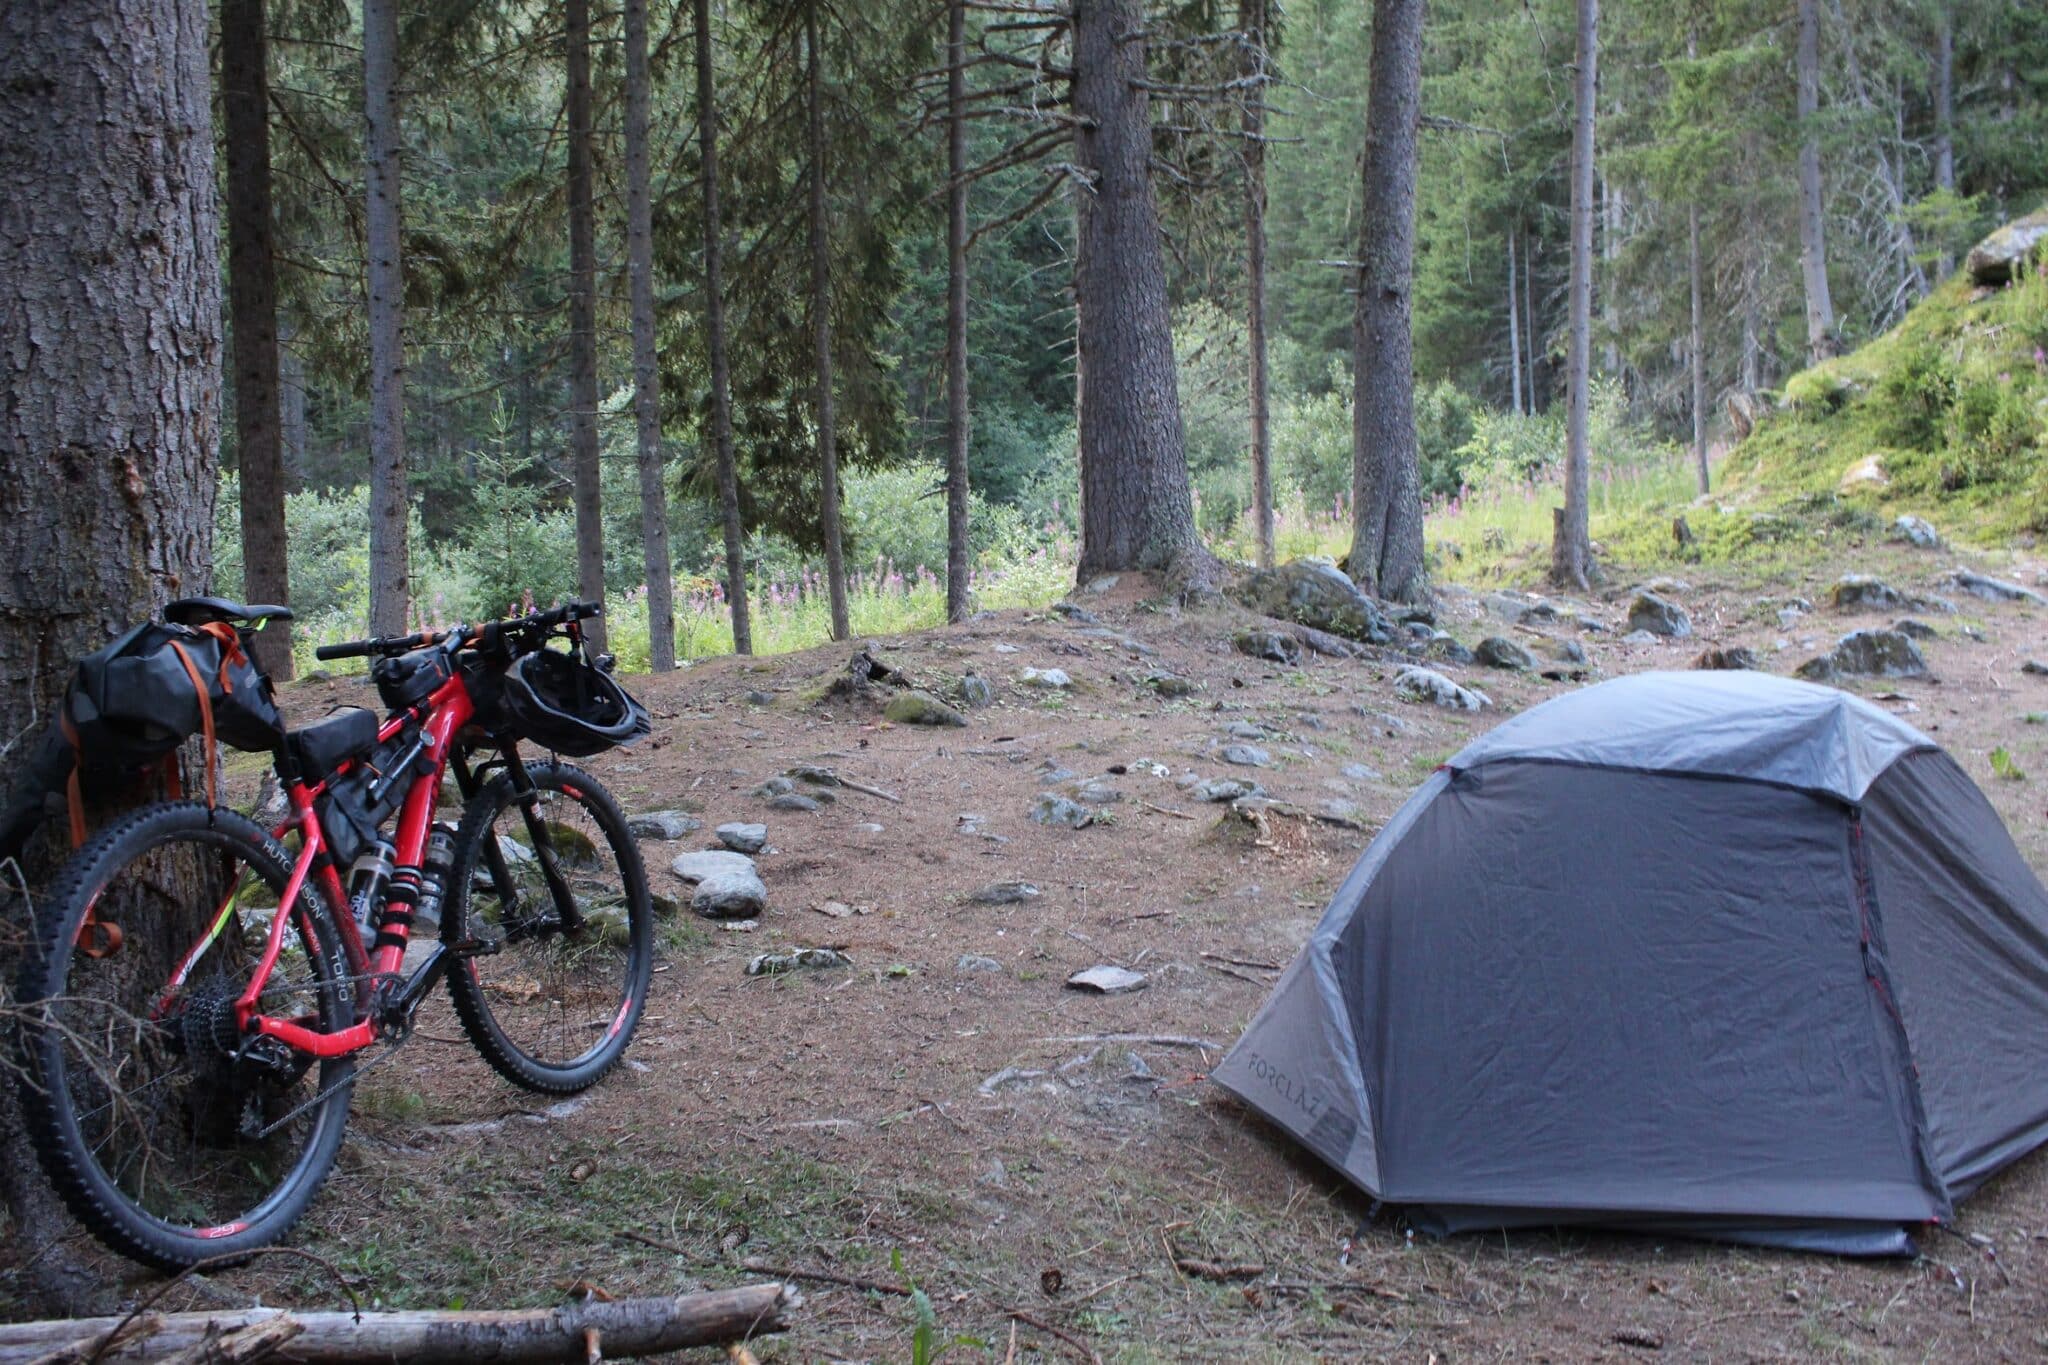 barraca de acampamento selvagem nos alpes com pinheiros ao redor